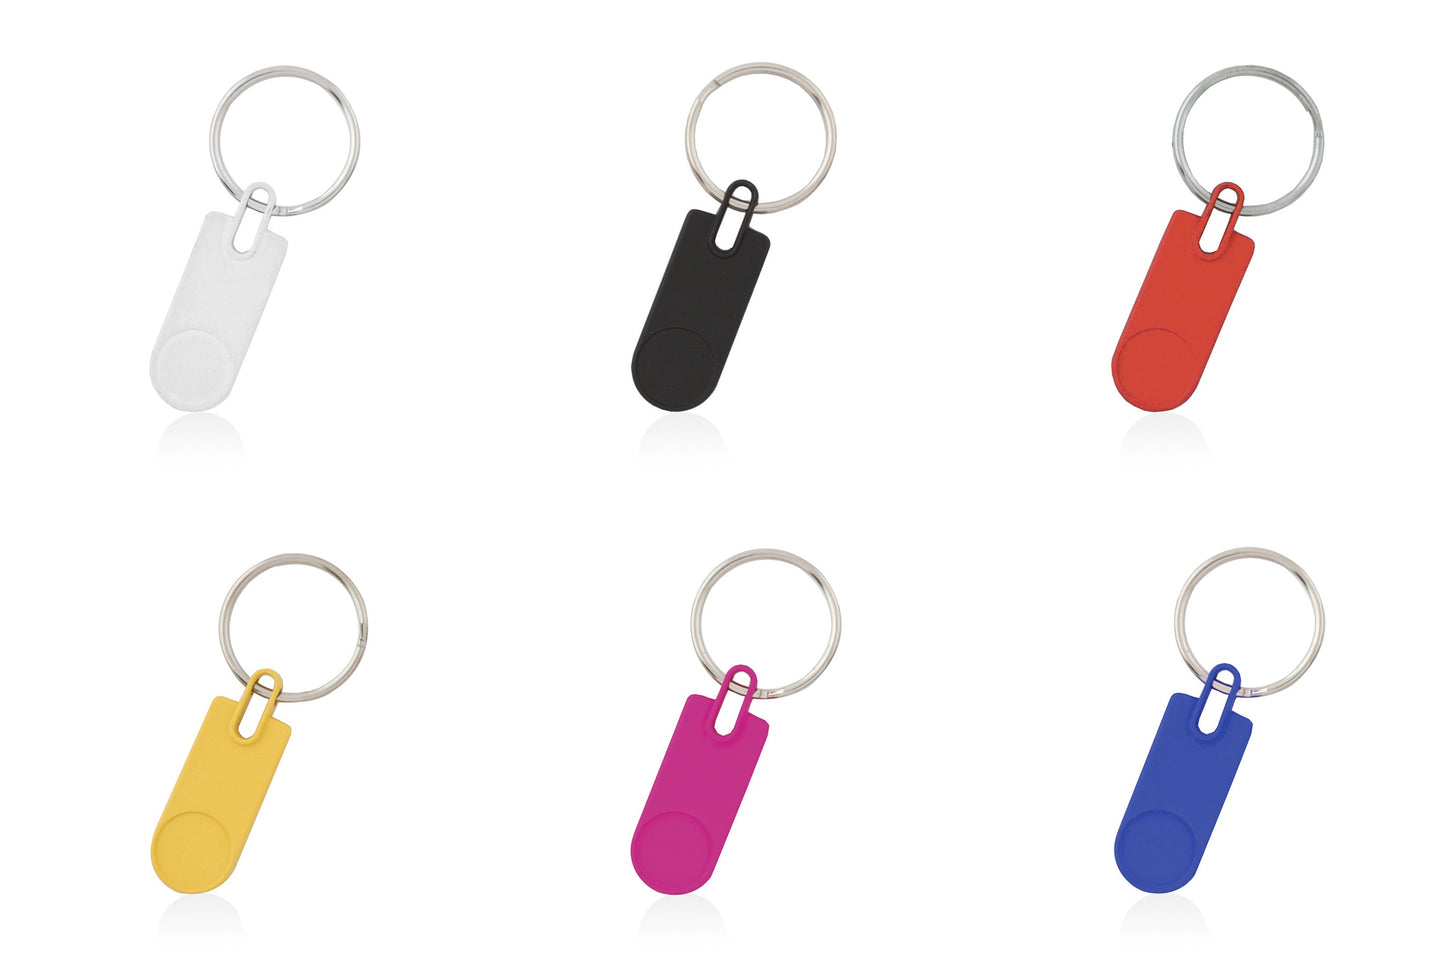 Porte-clés métallique personnalisable avec option de gravure. Offert en 6 couleurs différentes.